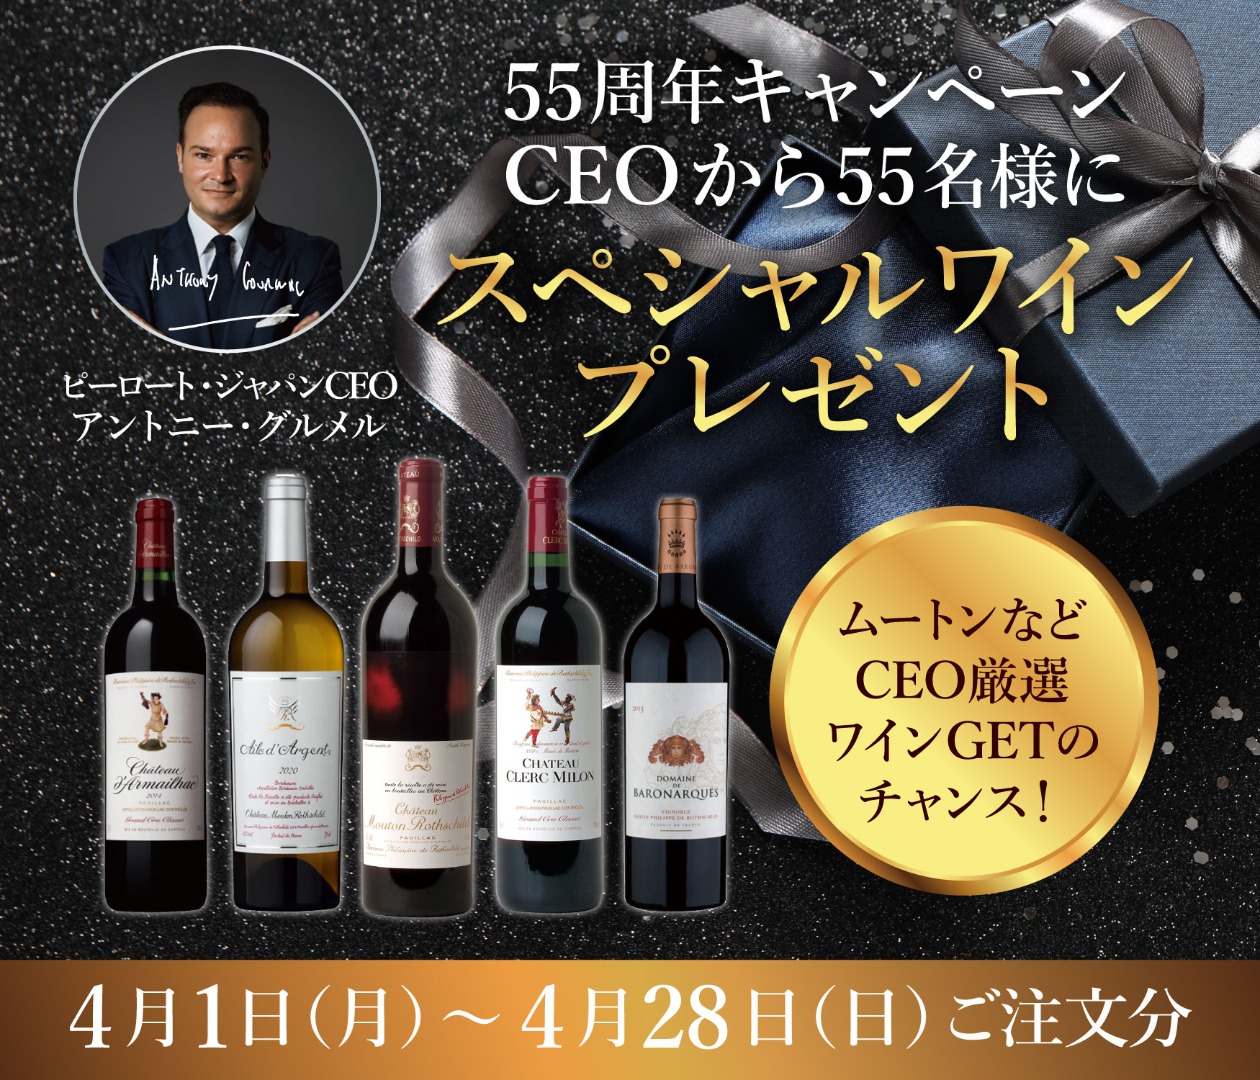 ピーロート・ジャパン55周年キャンペーン CEOからスペシャル ワインプレゼント